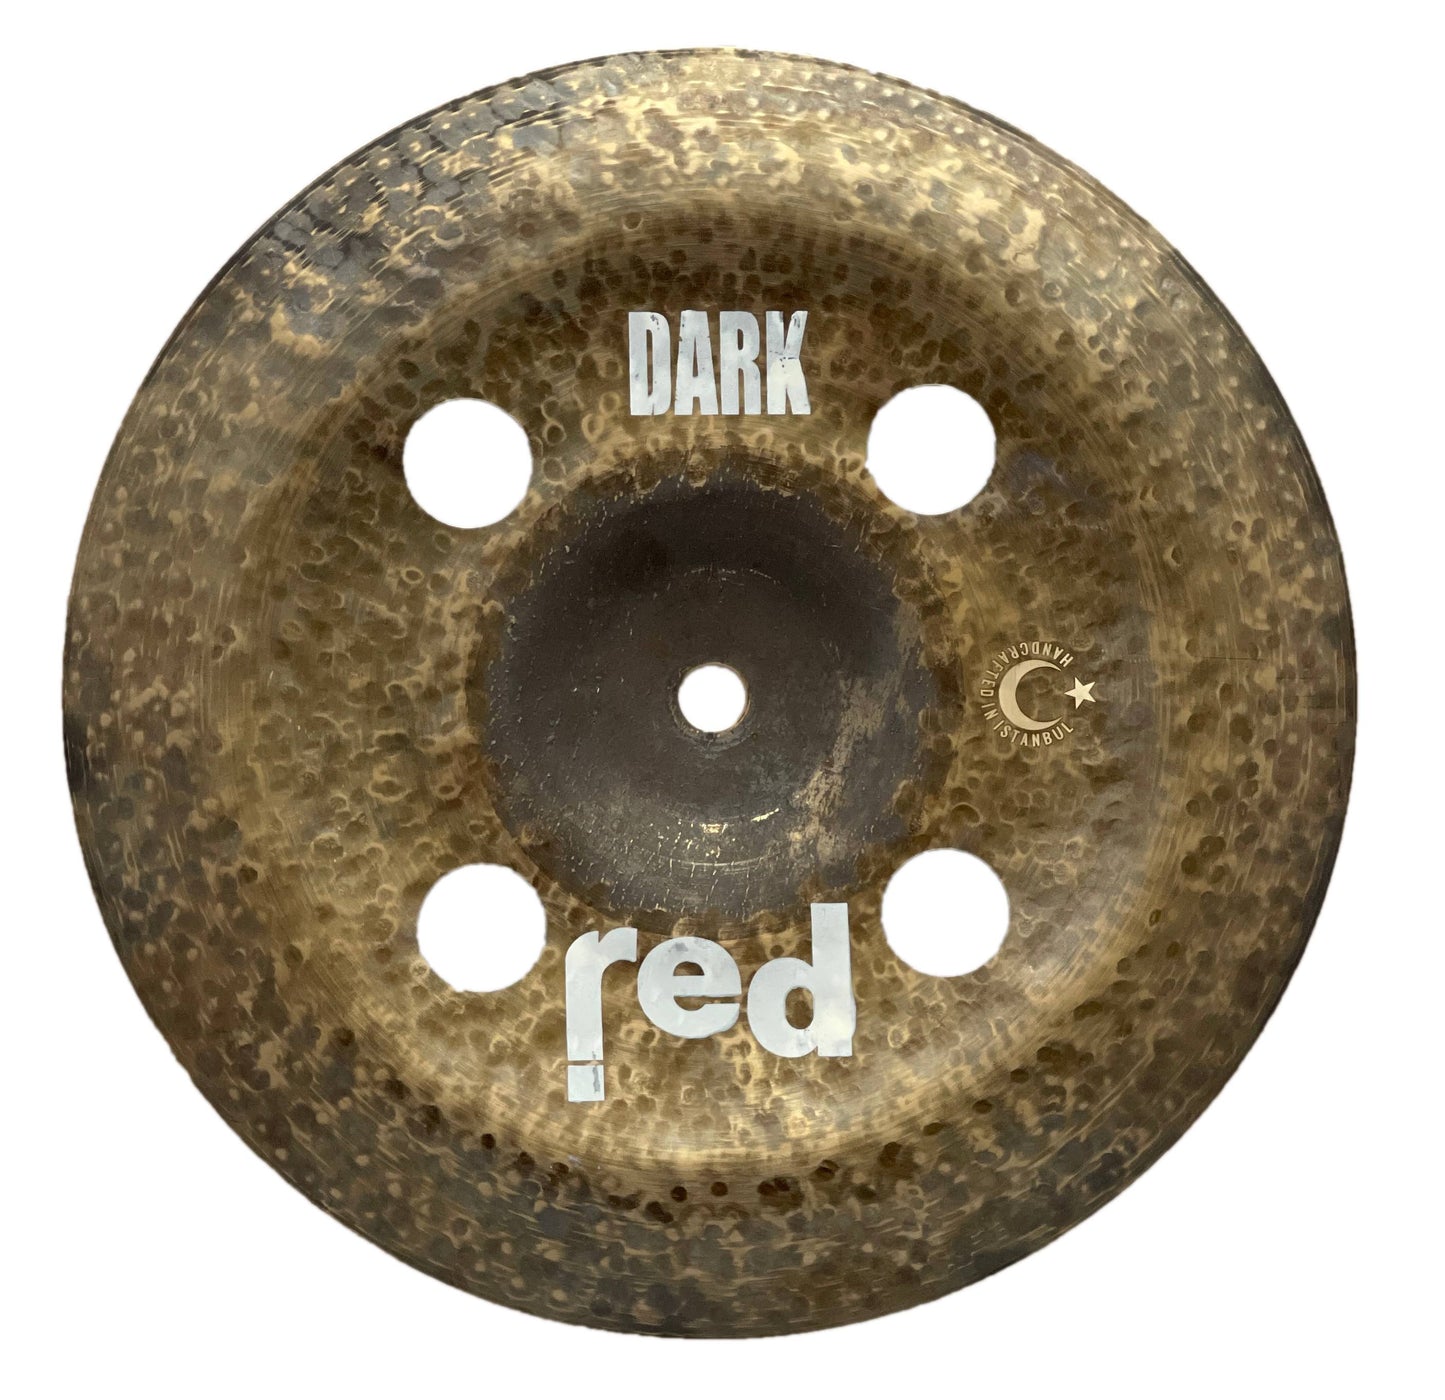 Dark Series fx China Cymbal